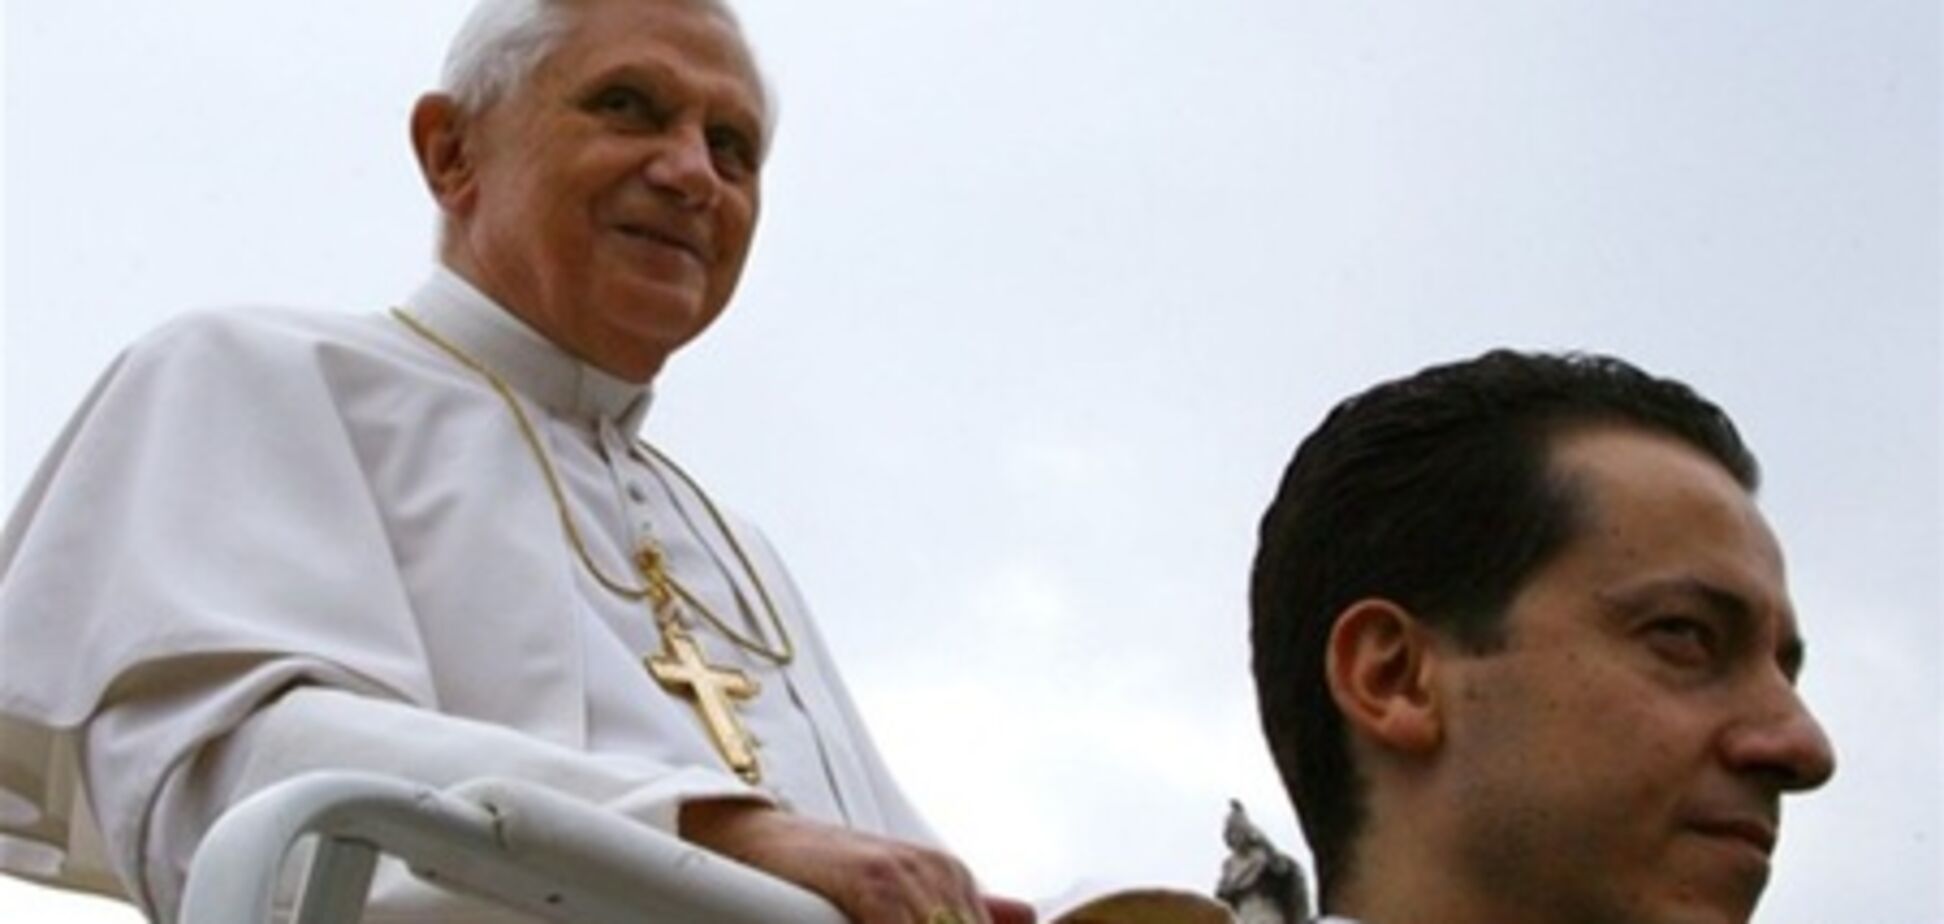 СМИ: следующим Папой может стать чернокожий кардинал